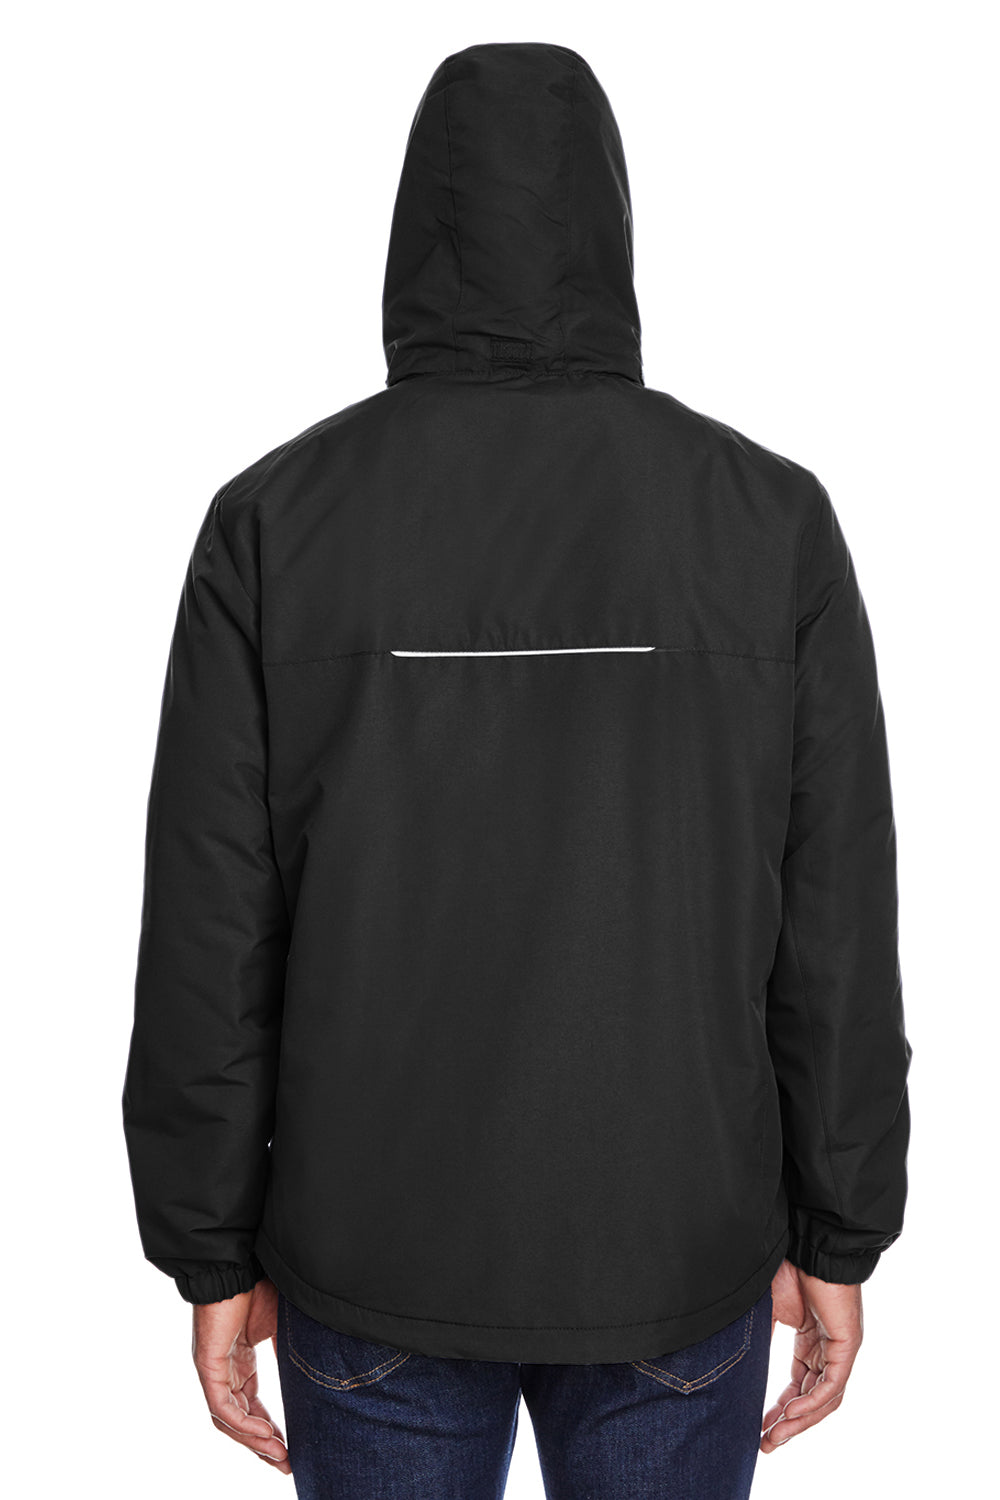 Core 365 88224 Mens Profile Water Resistant Full Zip Hooded Jacket Black Back